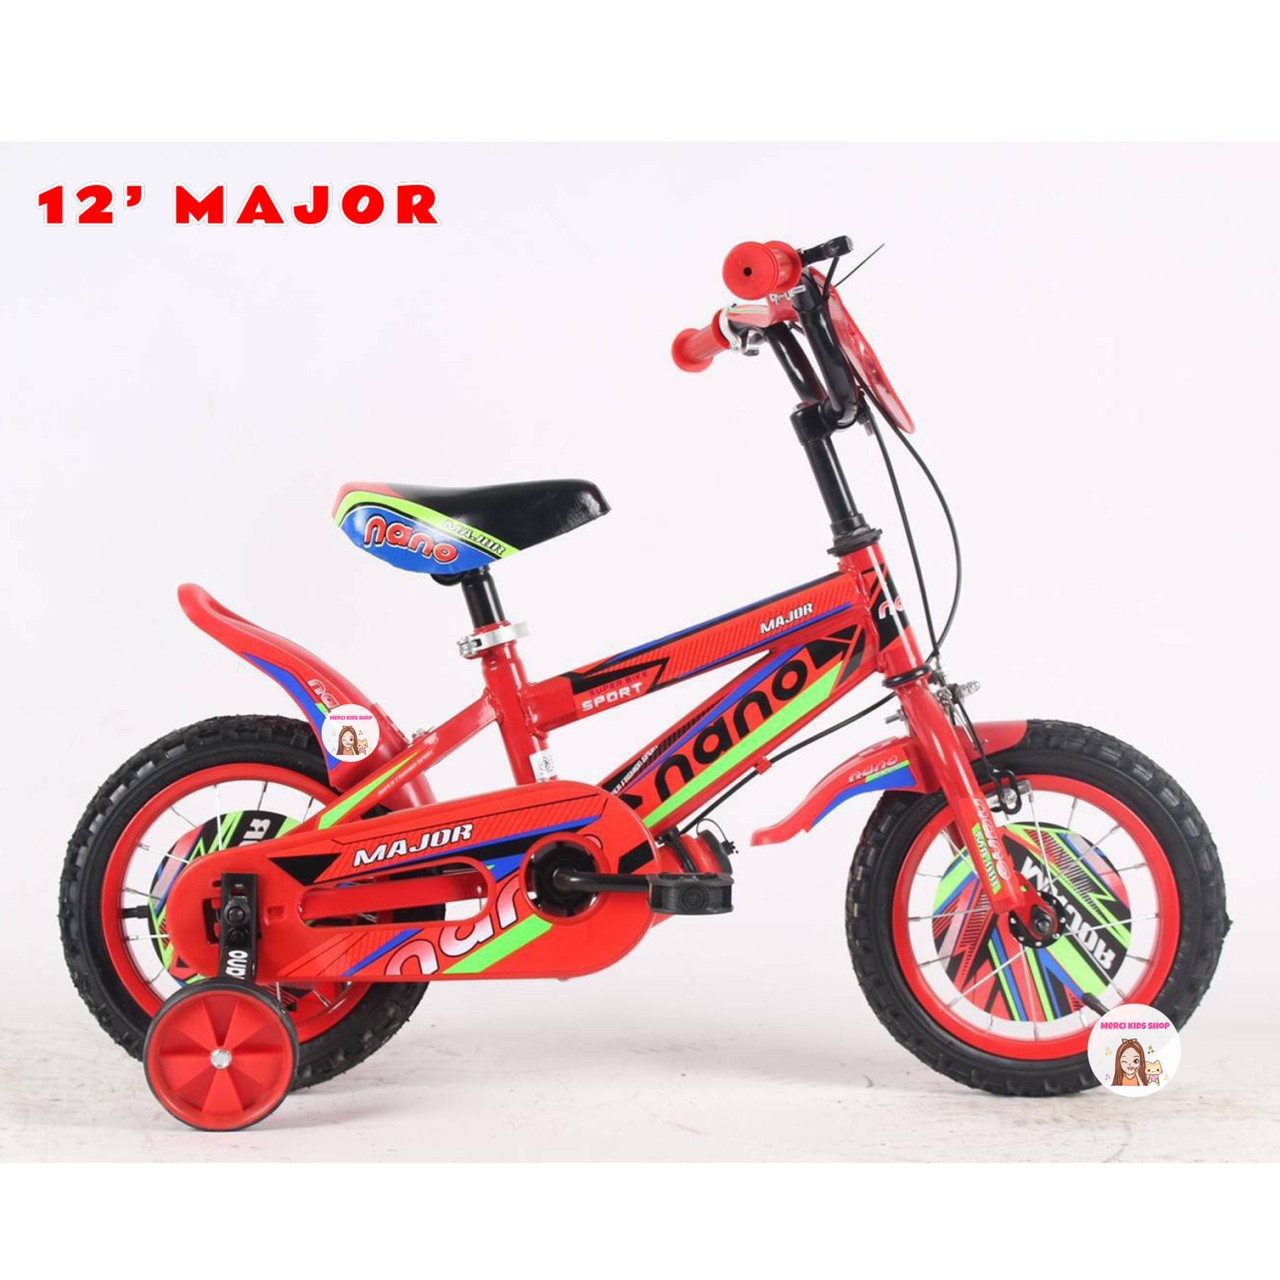 ?โปรเดือด? จักรยานเด็ก 12นิ้ว สุดเท่ห์ มีกระติกน้ำ รถจักรยานเด็ก LNB-3001 / Major